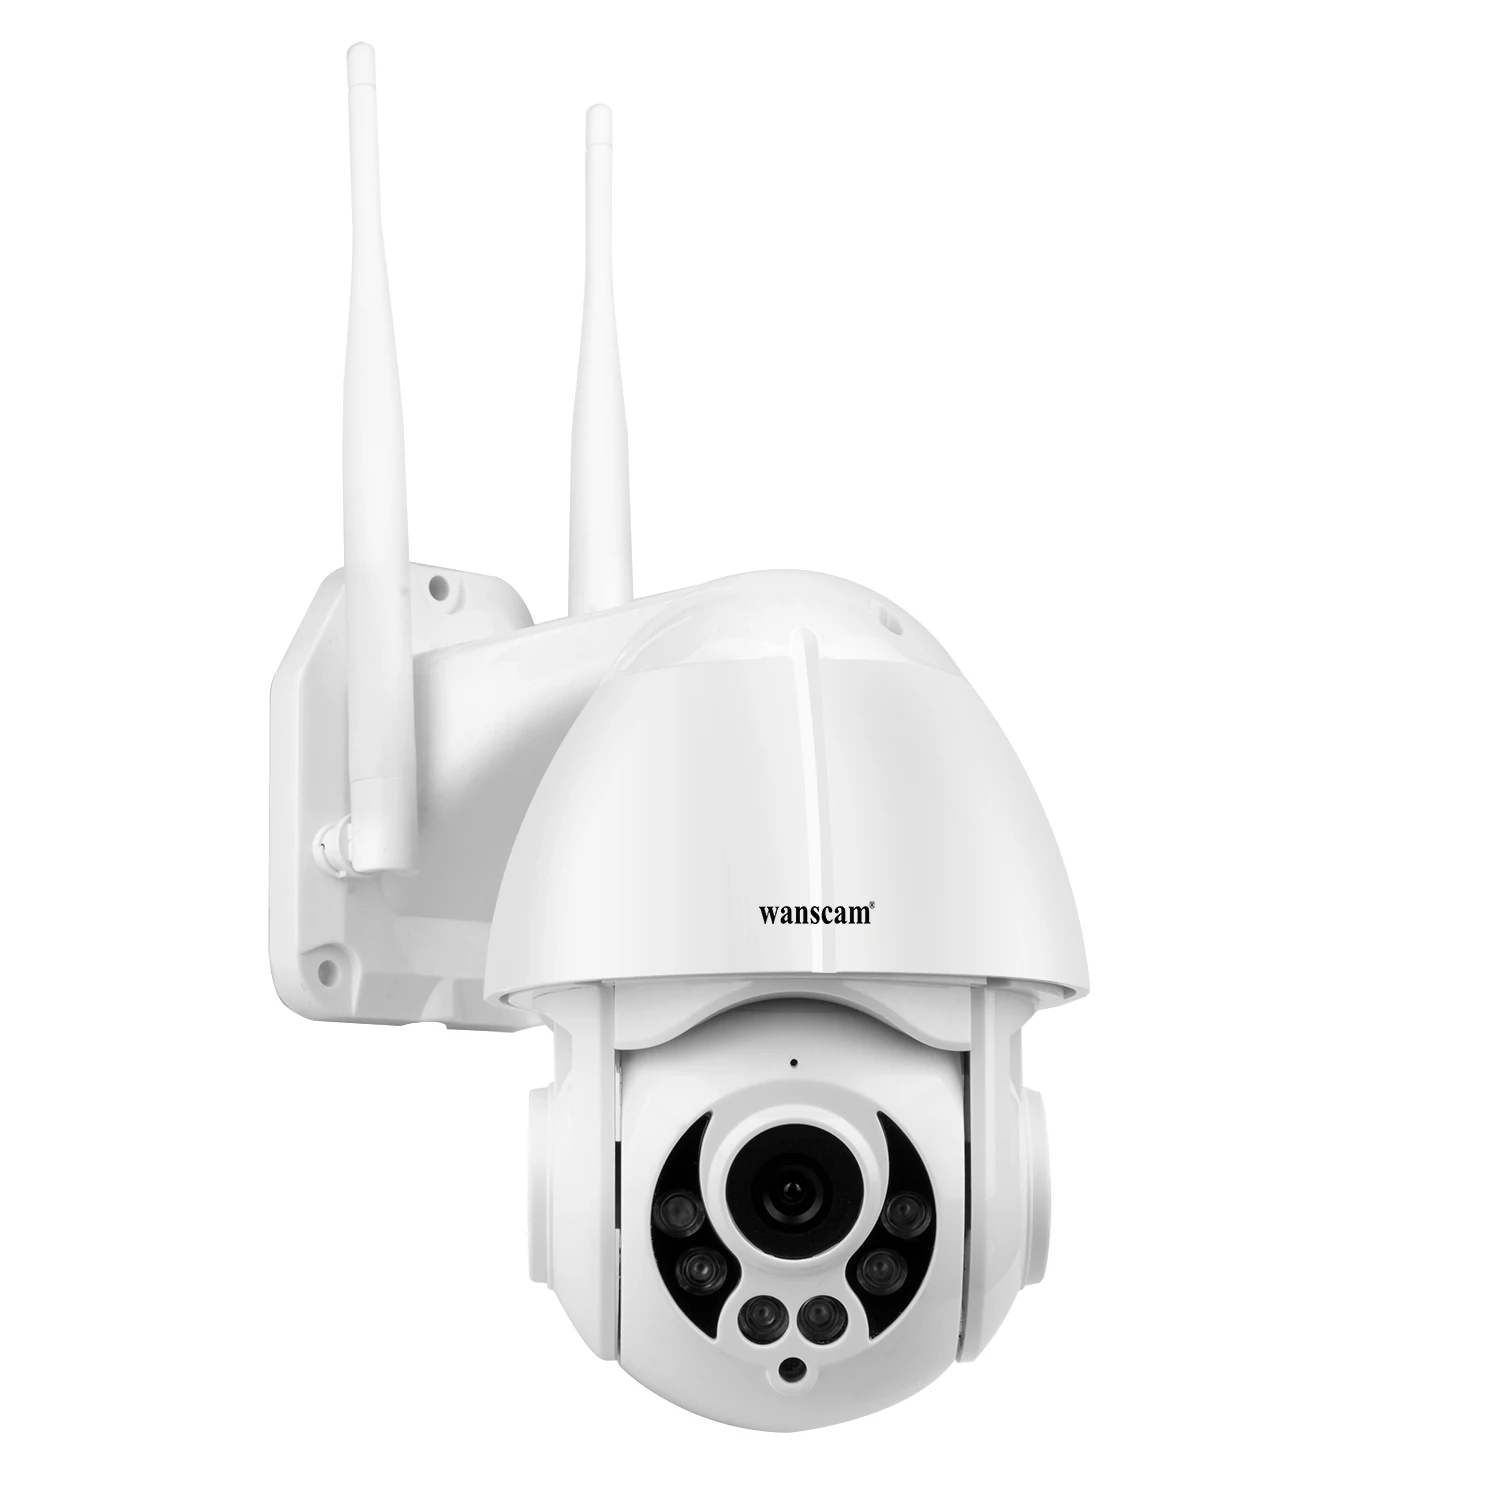 Wanscam 1080P WiFi IP камера обнаружения движения Автоматическое отслеживание PTZ 4X зум 2-way аудио P2P CCTV безопасности открытый купол Cam SD слот для карты